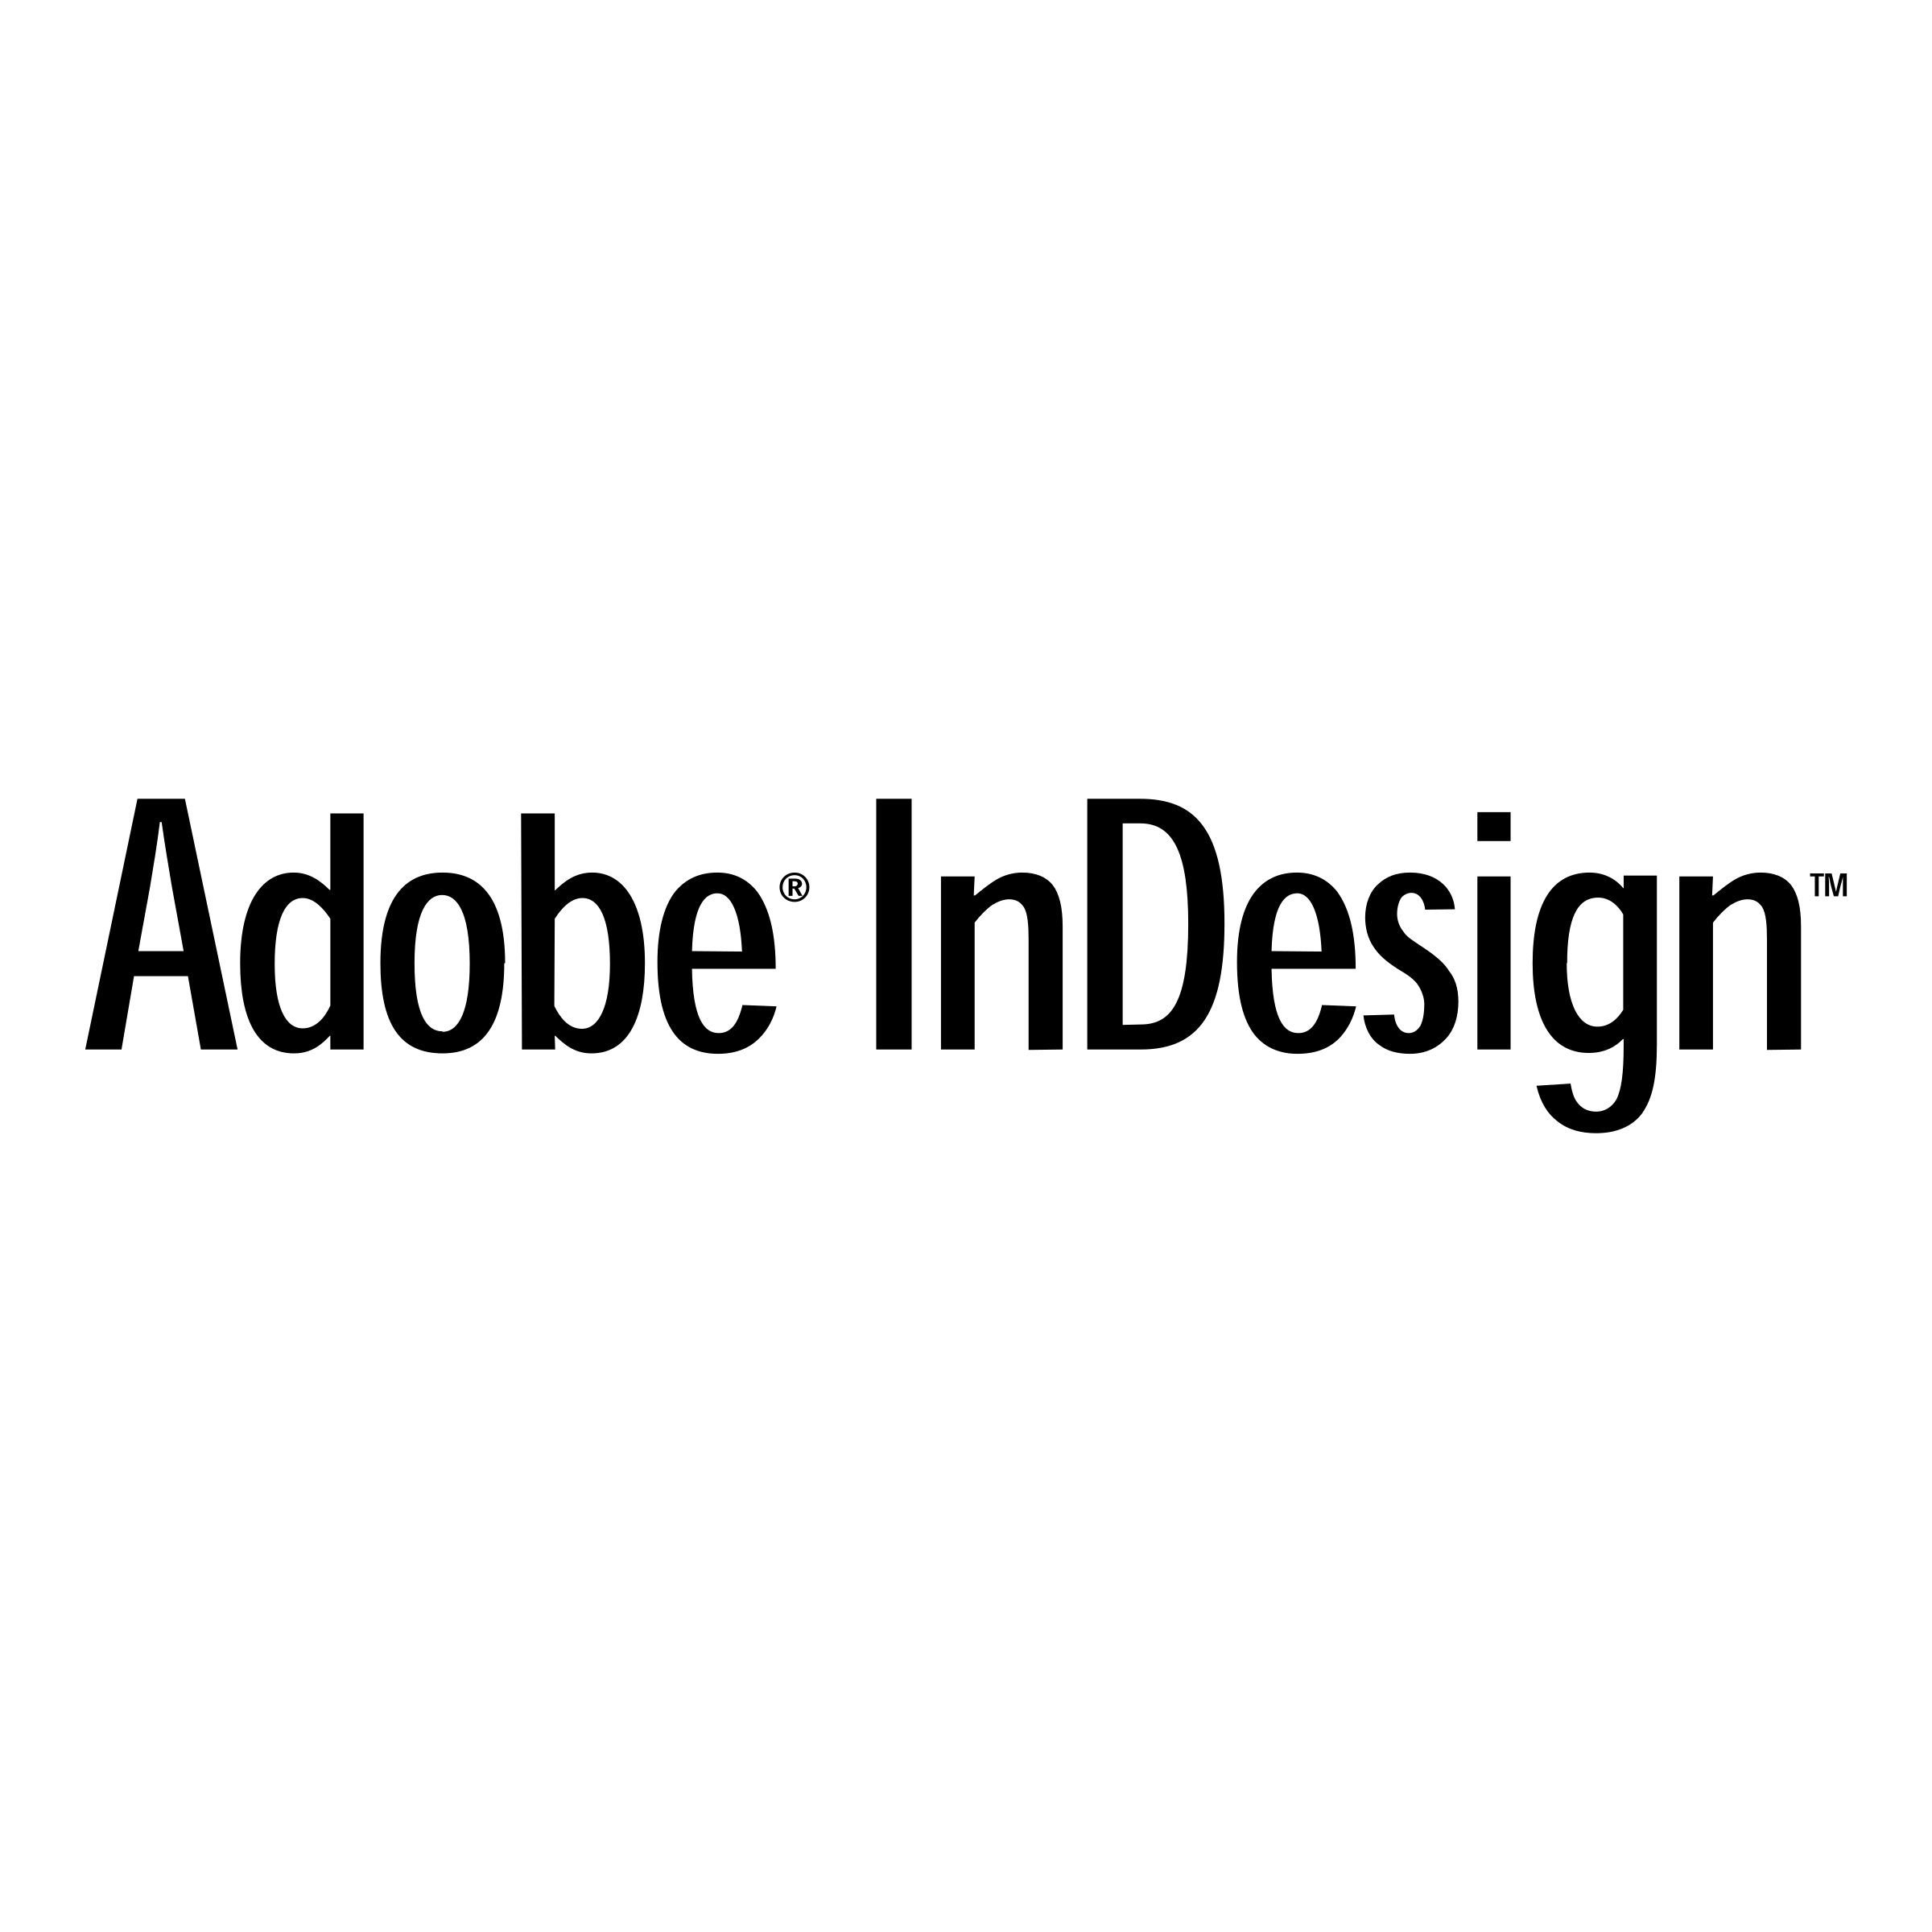 Adobe InDesign Logo - Adobe InDesign Logo PNG Transparent & SVG Vector - Freebie Supply